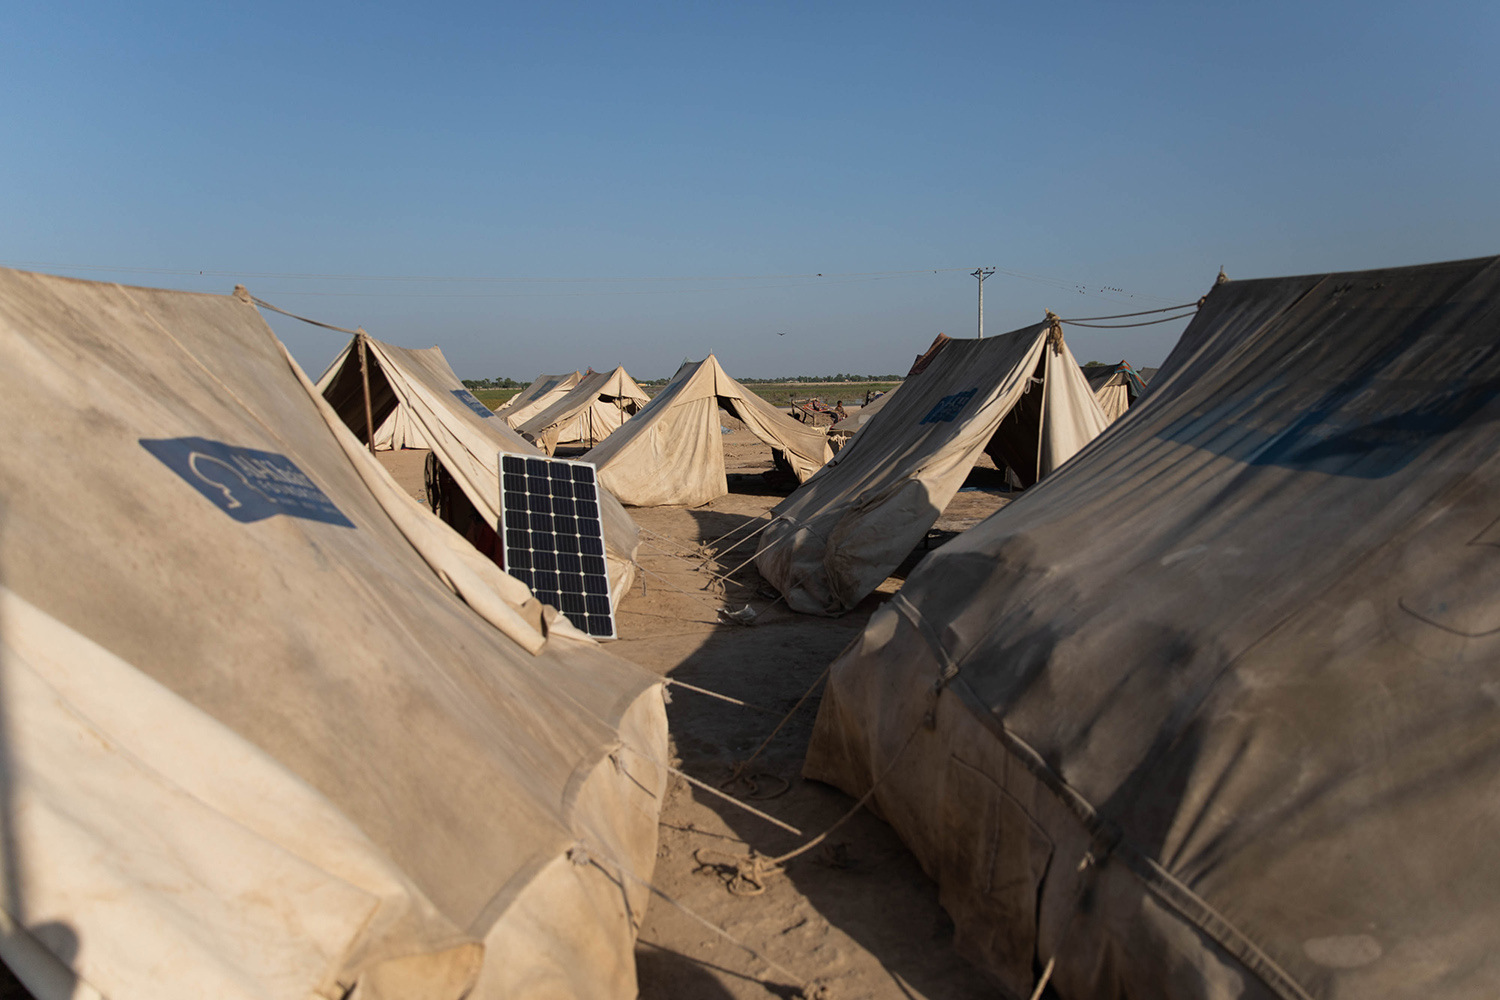 Tiendas de campaña para socorrer a las víctimas de las inundacionesvíctimas en Pakistán